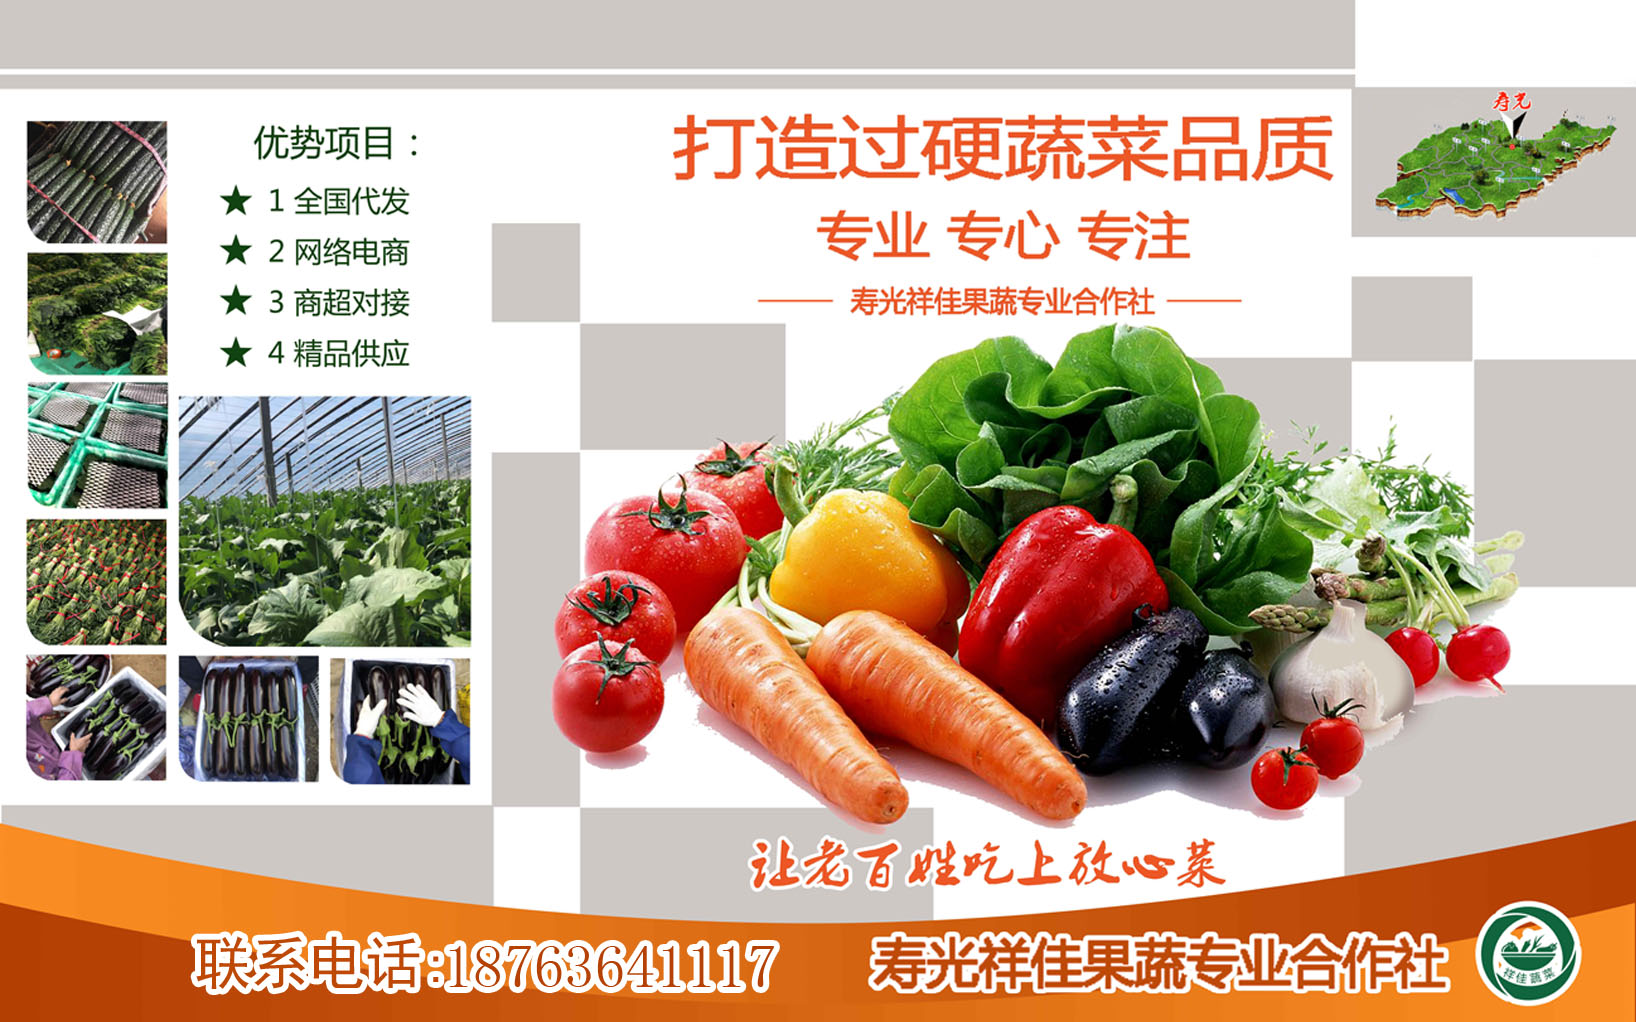 寿光祥佳蔬菜合作社出售茄子丝瓜西葫芦等